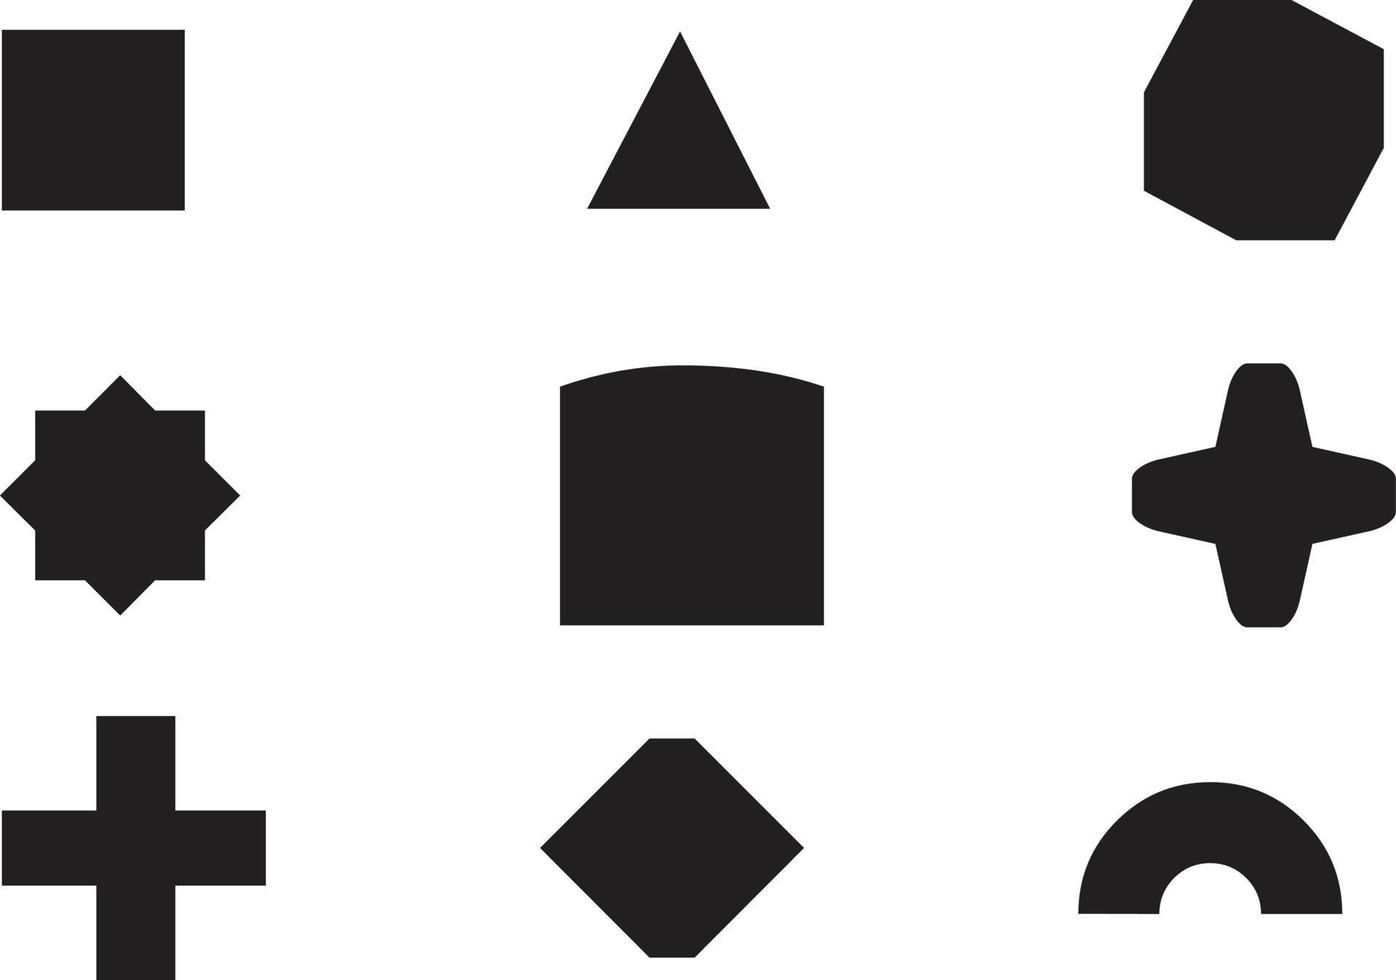 geometrische vormen zwarte silhouet pictogramserie. overzicht cartoon abstracte lege sjabloon voor tekstballon, bericht ballon, tekst opmerking badge, prijskaartje, papier geheugen sticker, denk cloud frame, webbanner vector